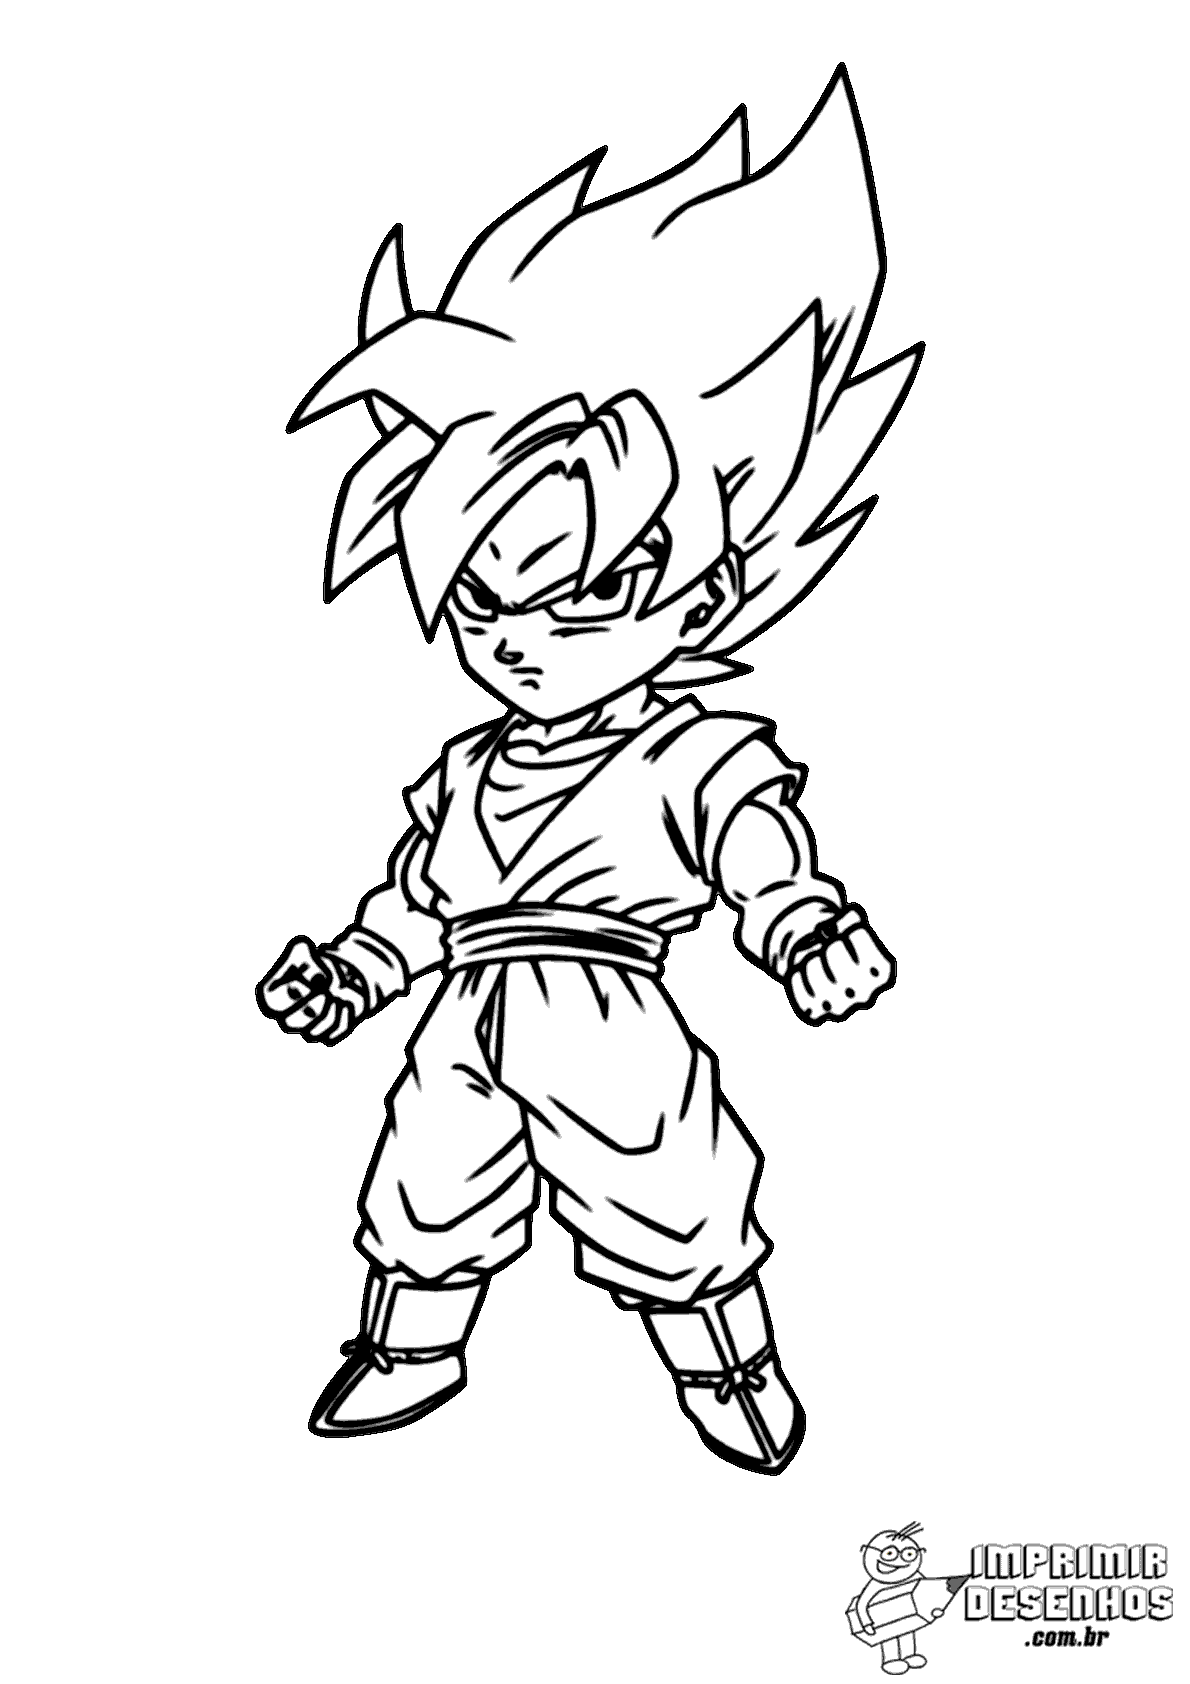 Goku desenhar